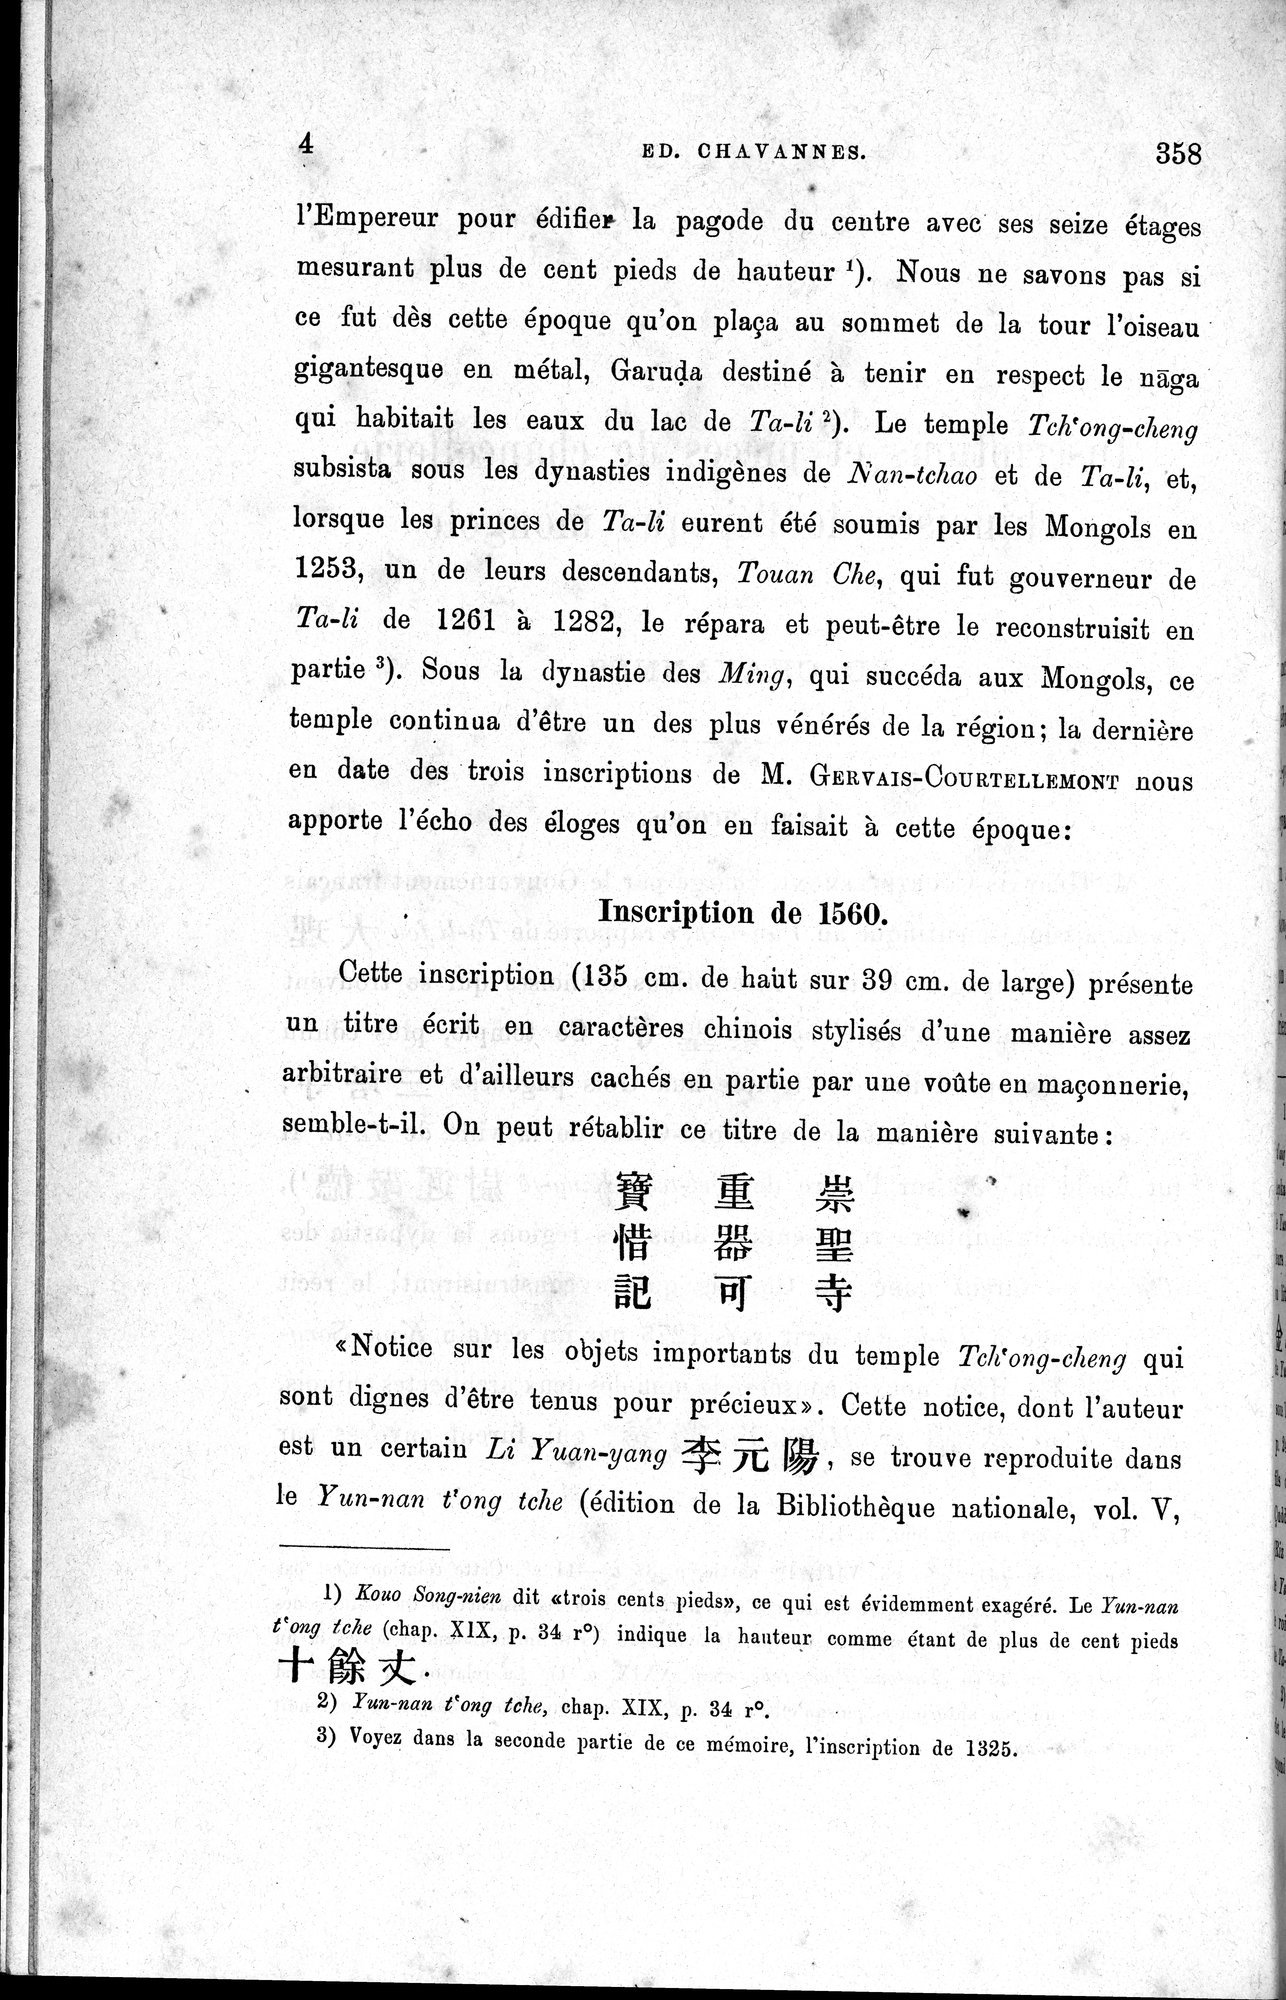 Inscriptions et pièces de Chancellerie Chinoises de l'époque mongol : vol.1 / Page 12 (Grayscale High Resolution Image)